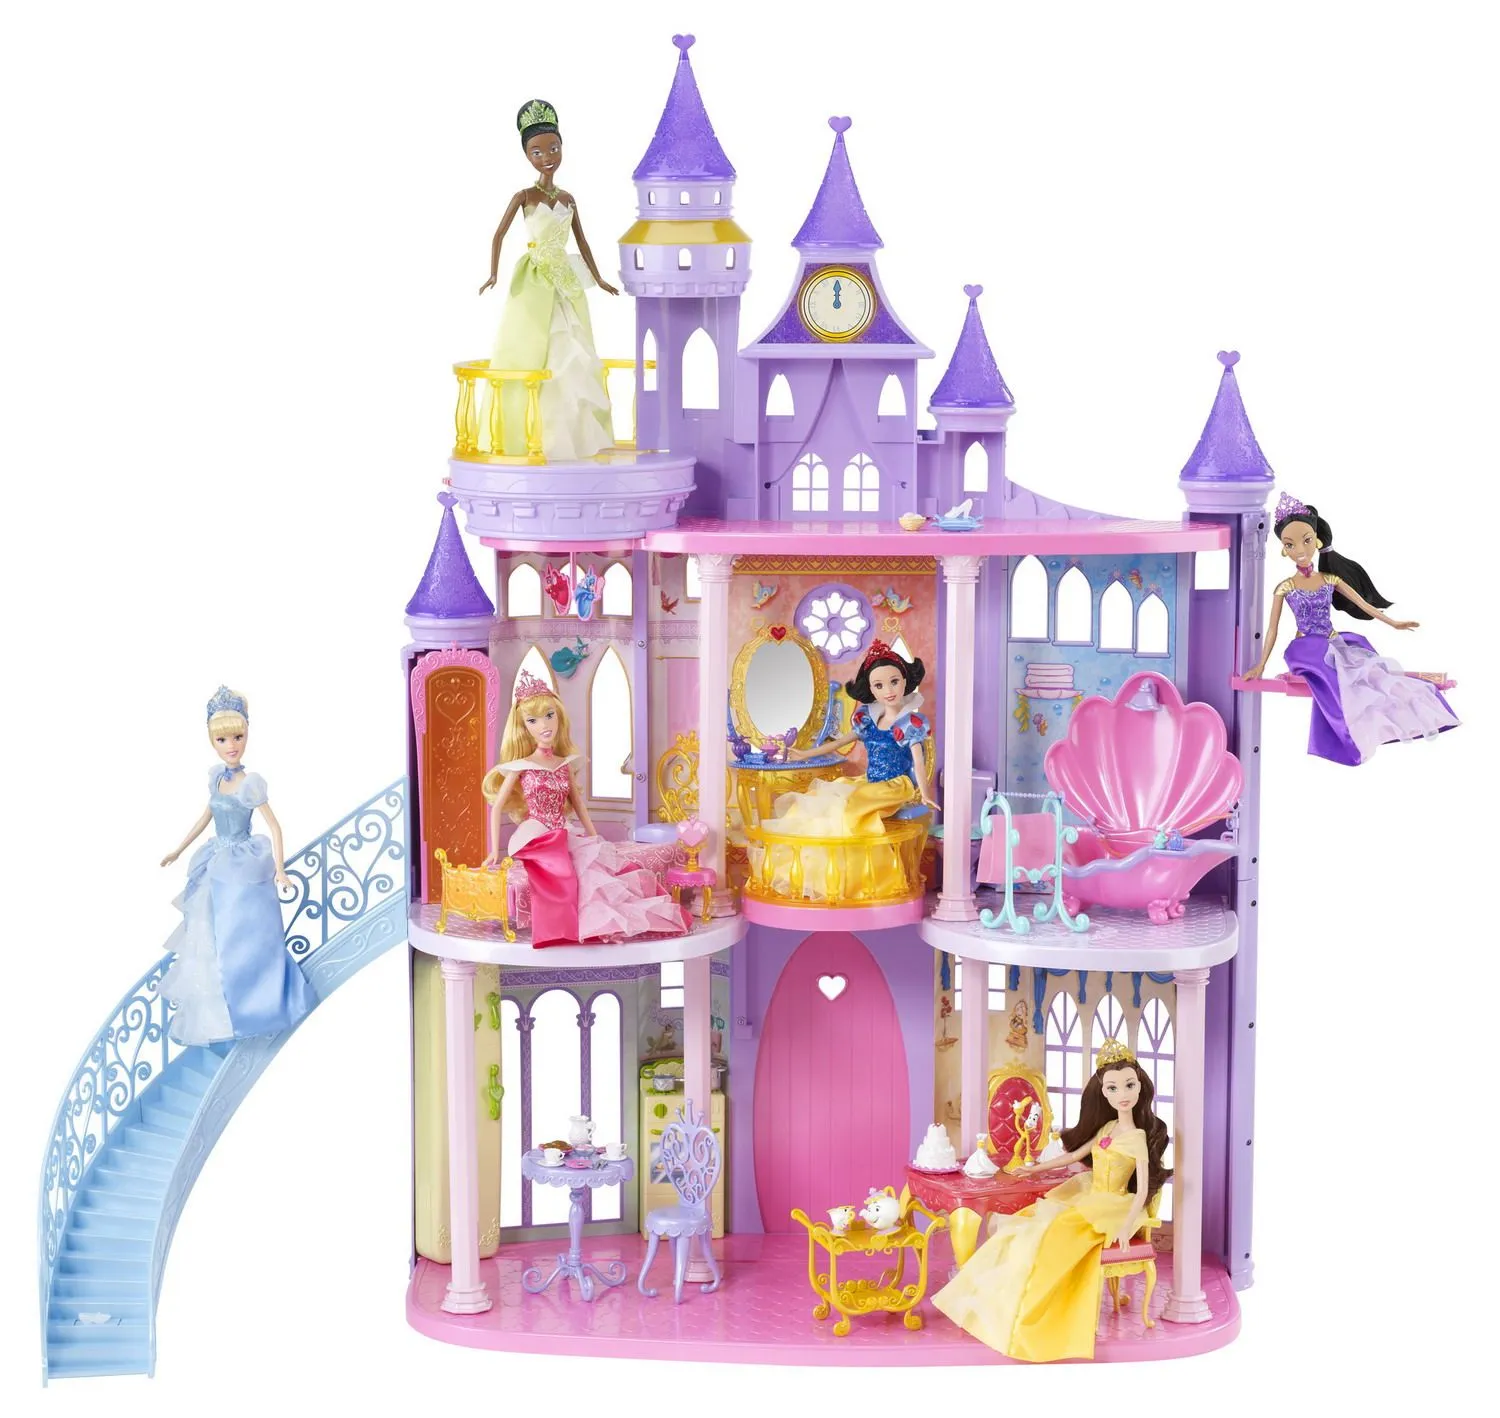  nos presenta nuevas muñecas de las ya clásicas Princesas Disney ...